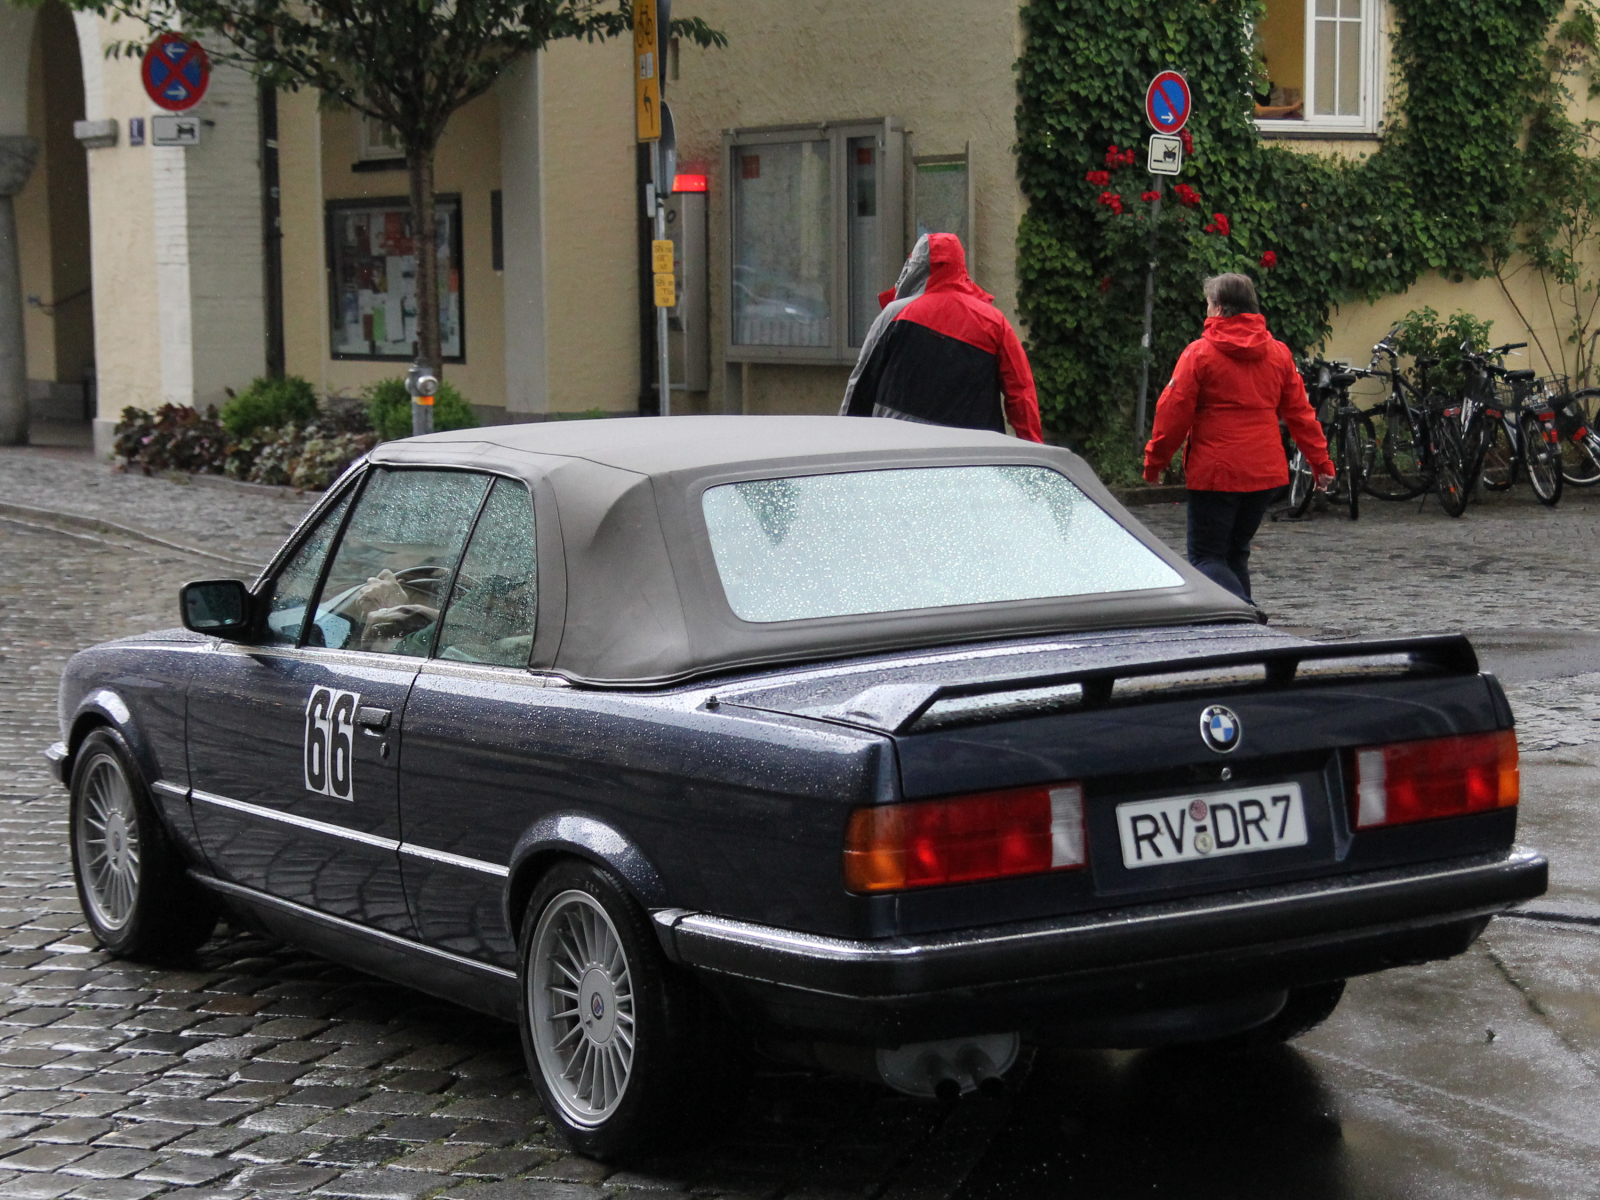 BMW 3-er E30 Cabriolet